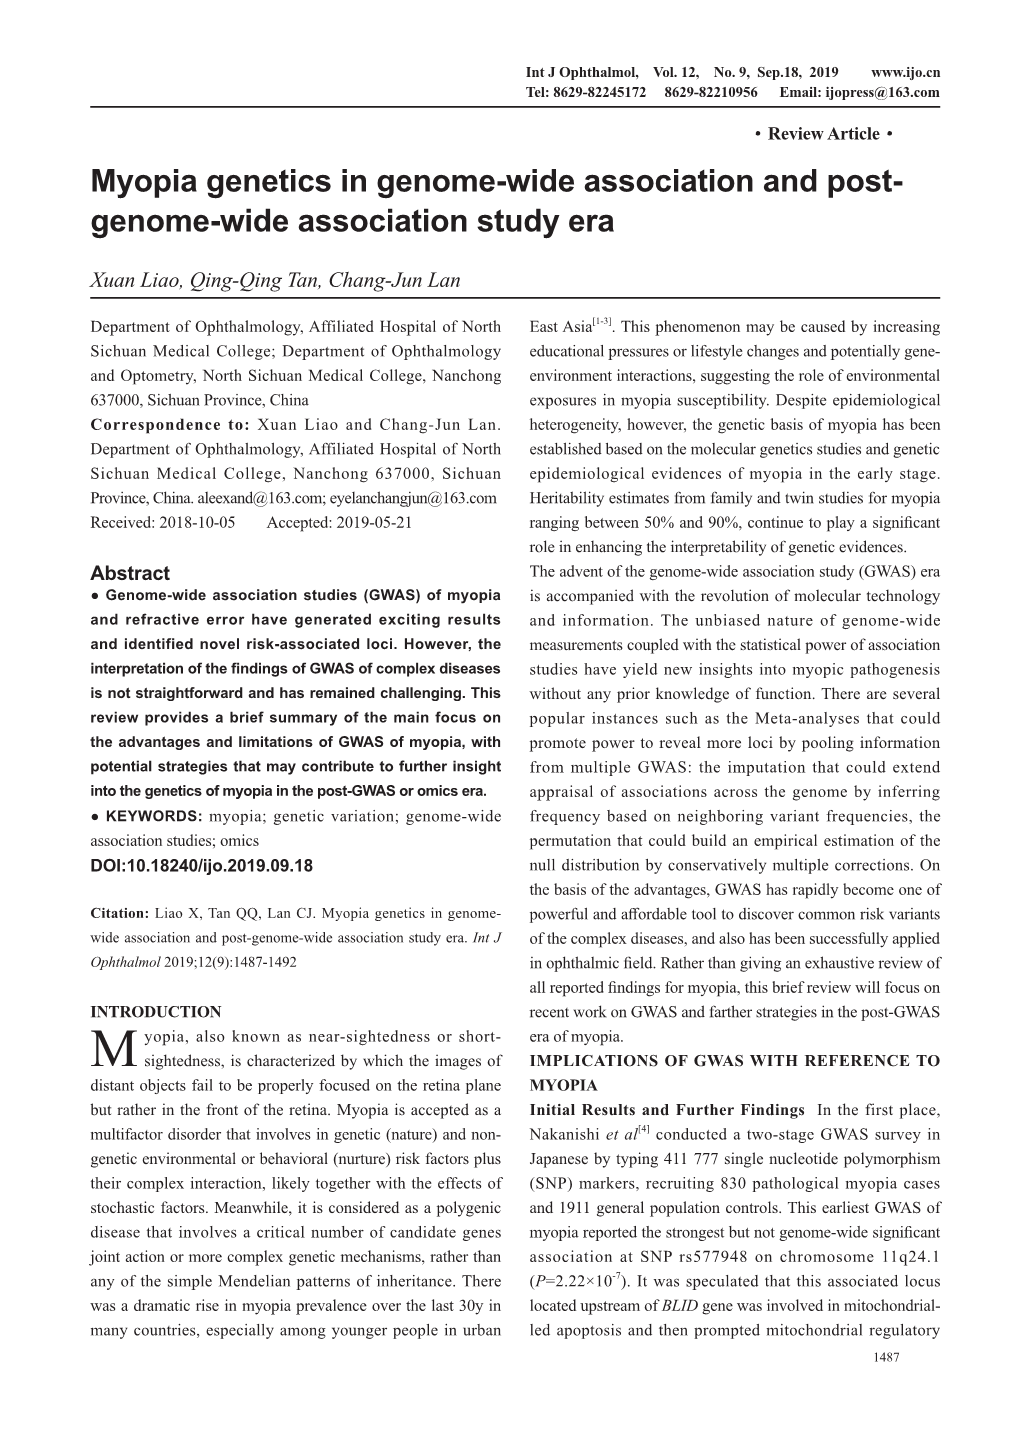 Myopia Genetics in Genome-Wide Association and Post- Genome-Wide Association Study Era